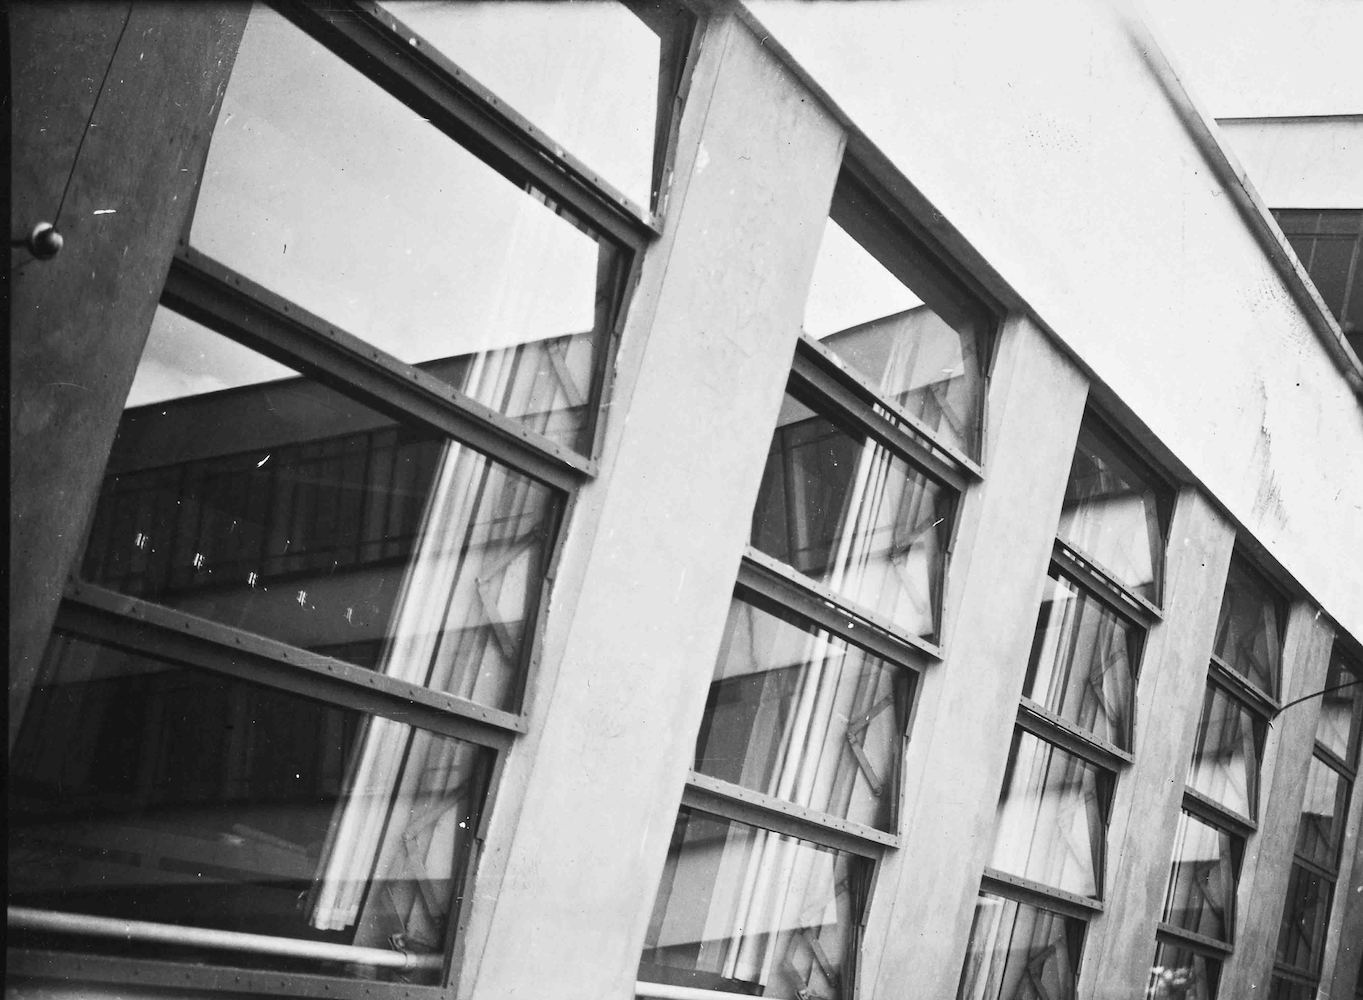 Bauhaus Dessau, Connecting Buildings (Penetration, Reflection)